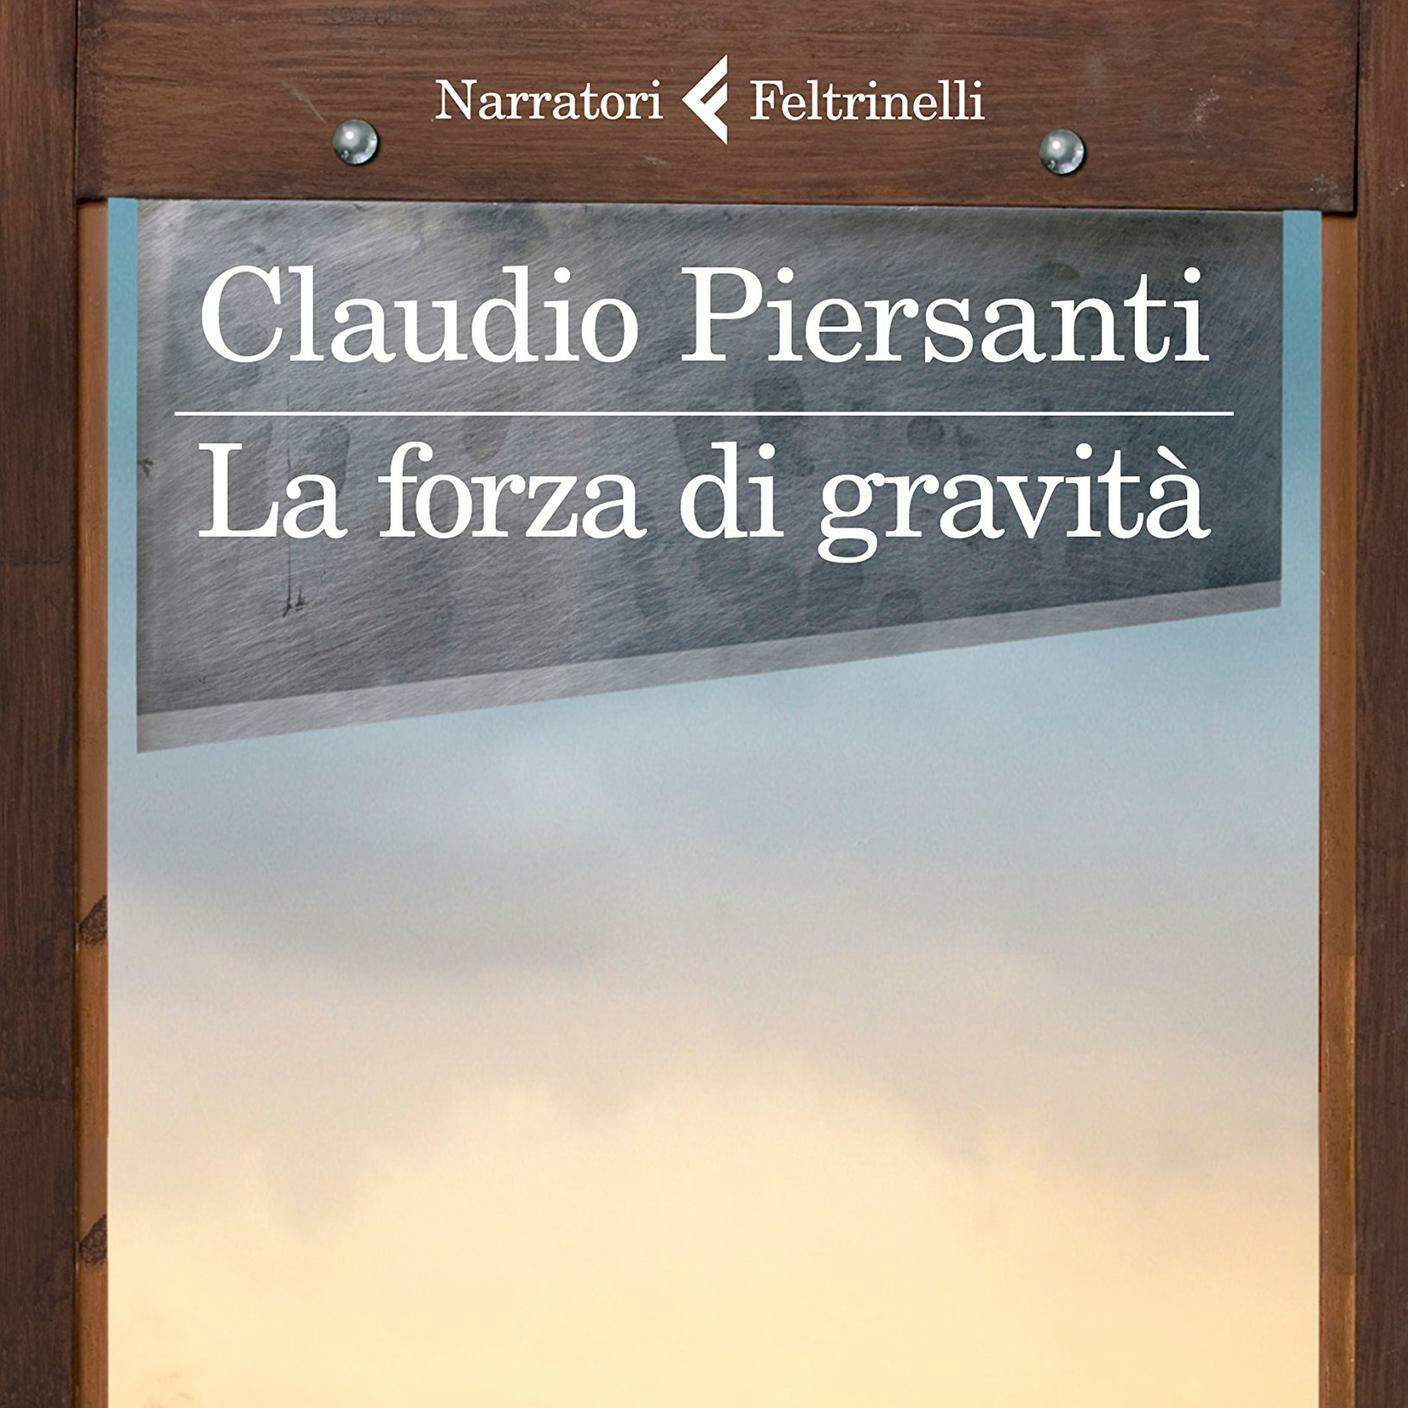 Claudio Piersanti, "La forza di gravità", Feltrinelli (dettaglio copertina)